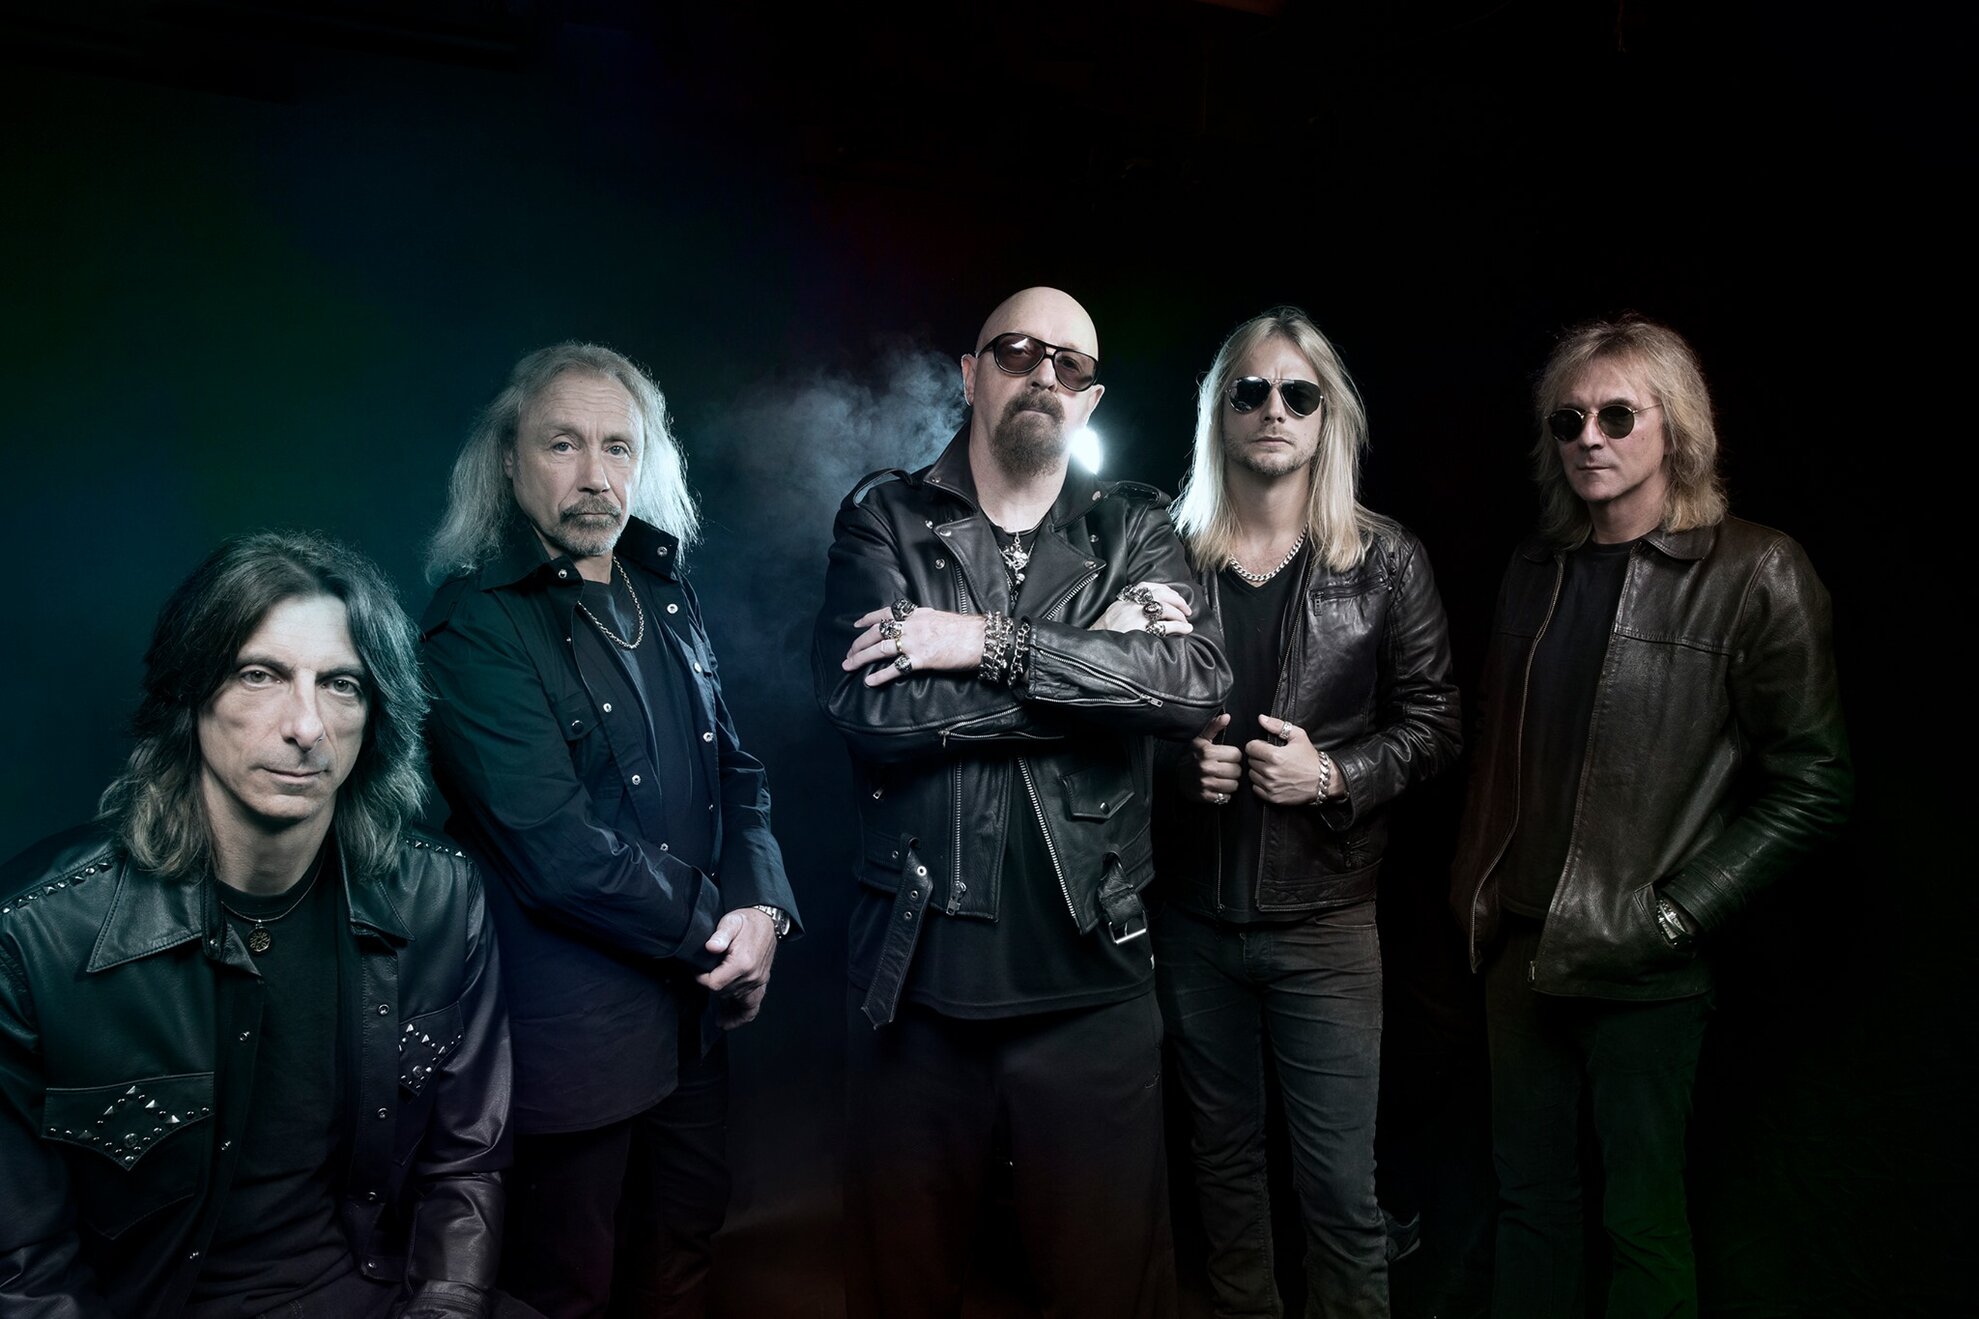 Judas Priest (UK)